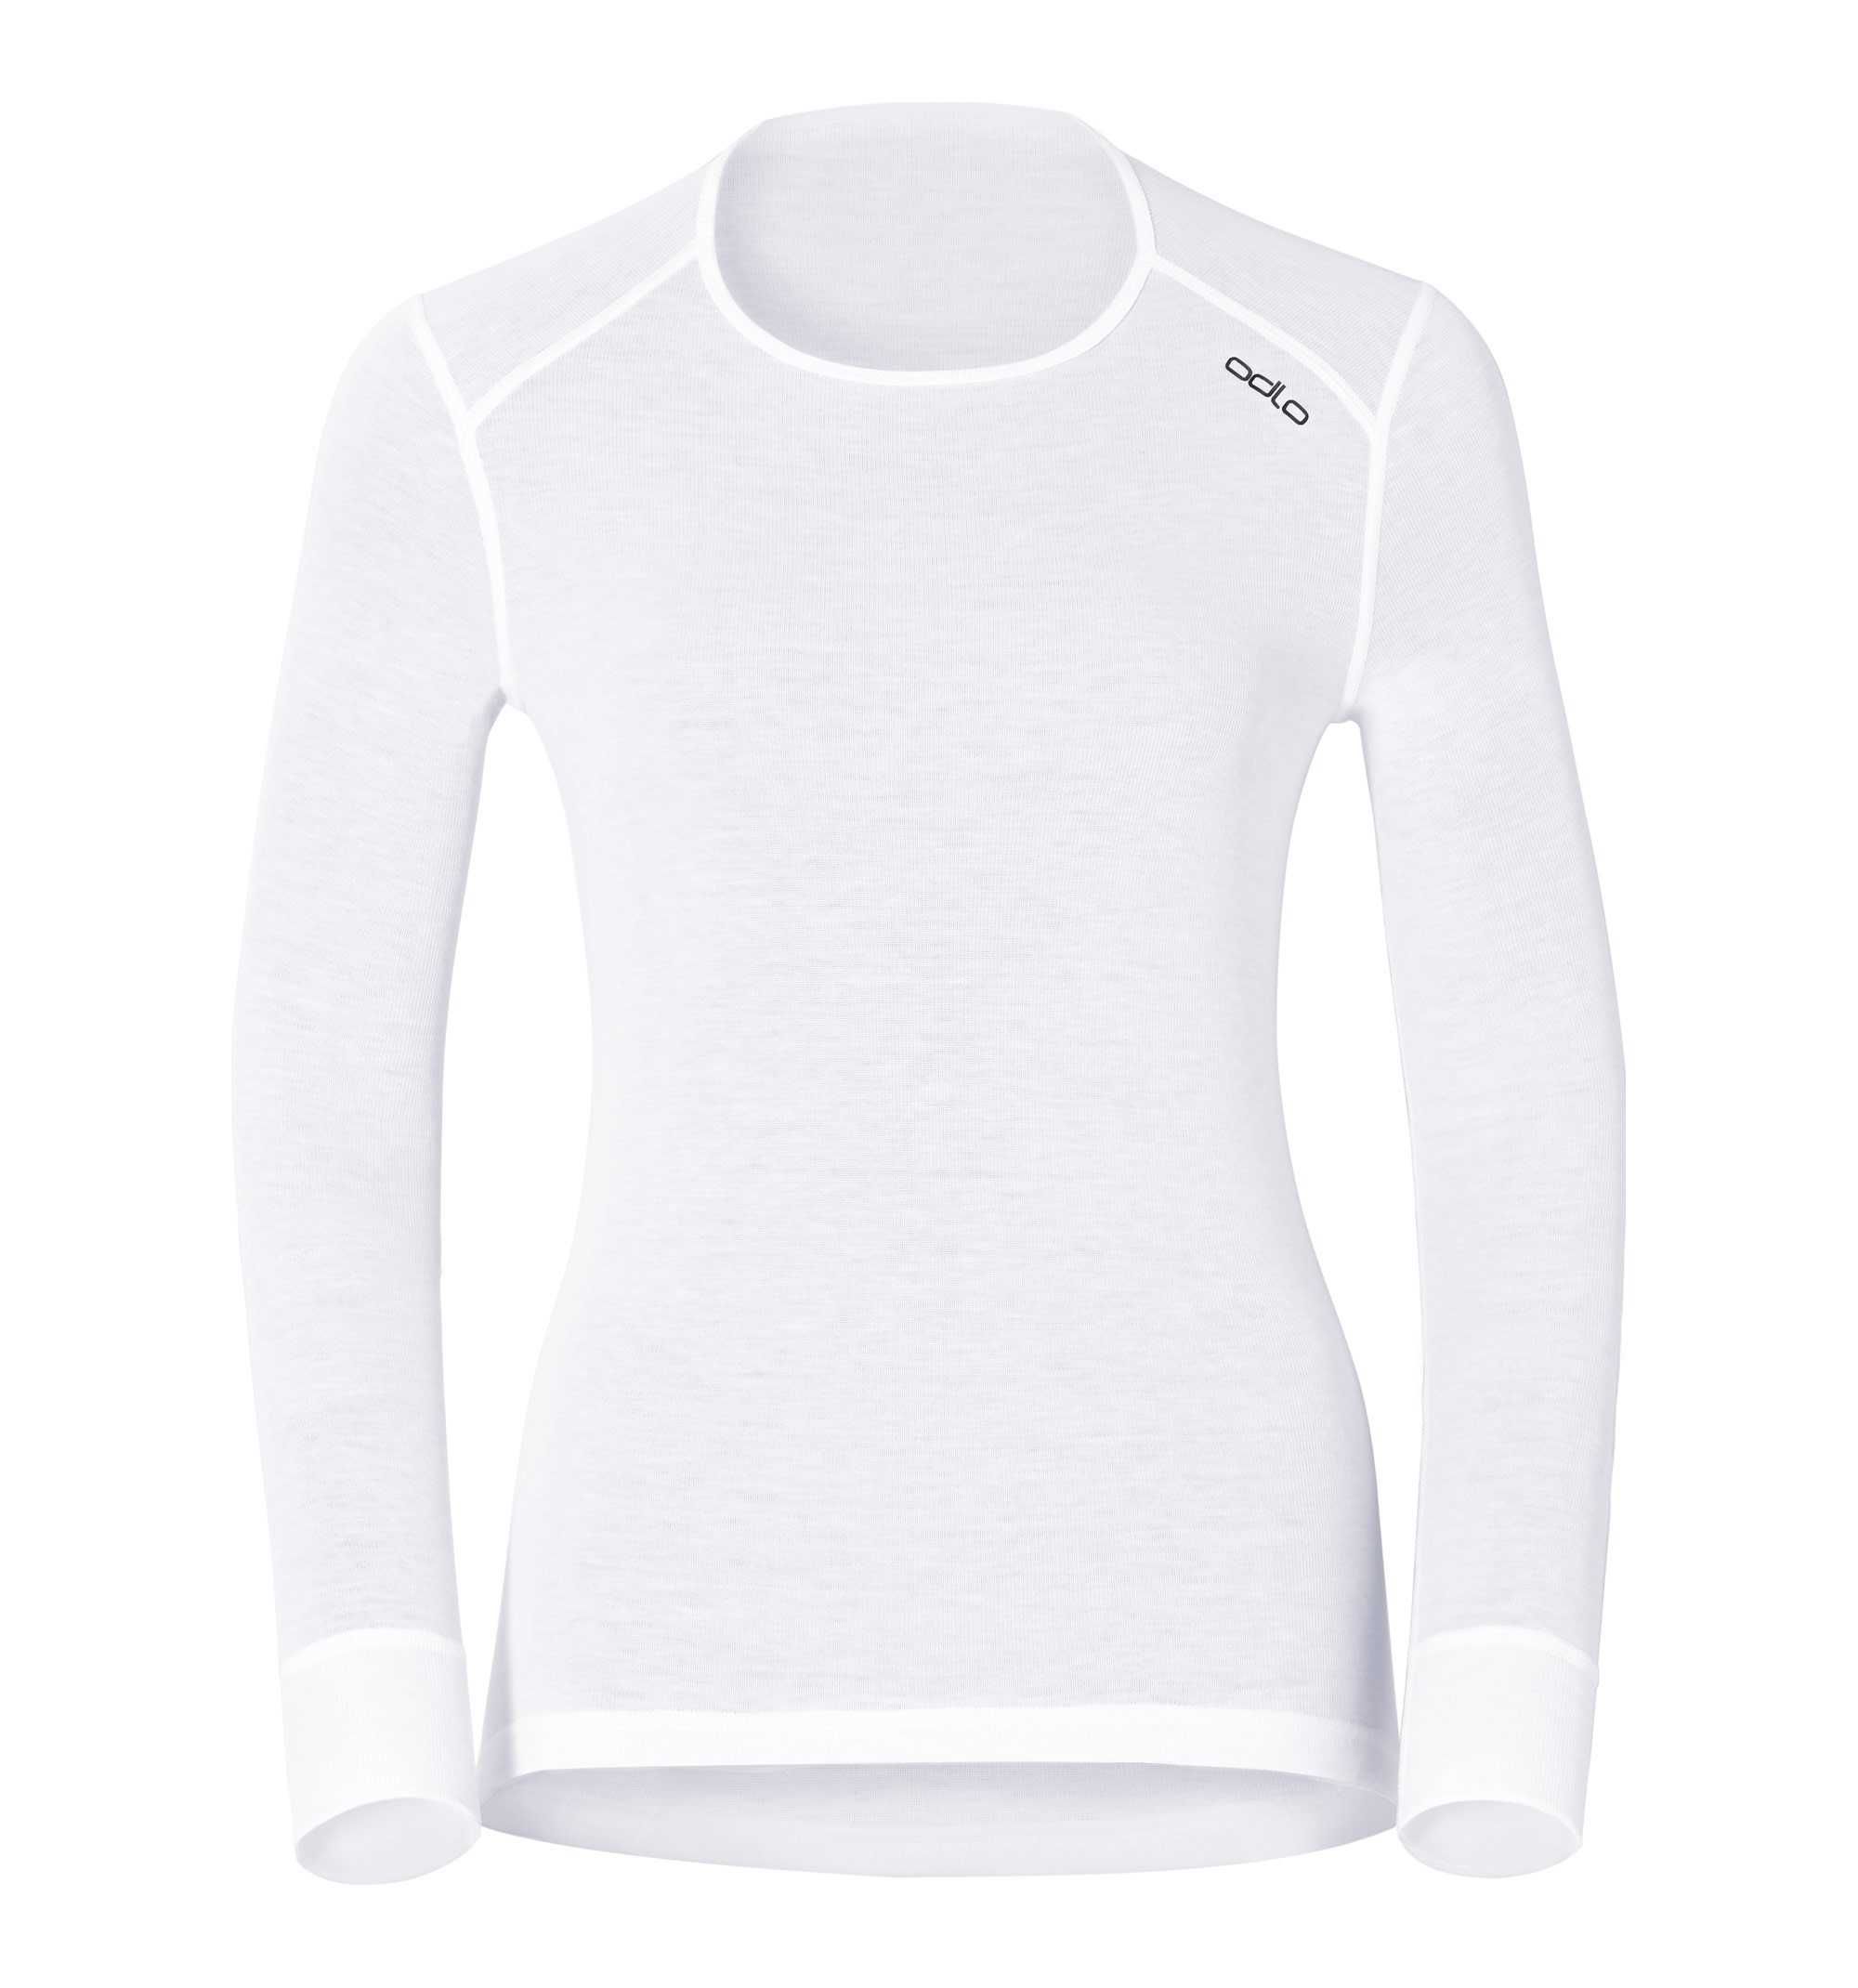 T-Shirt Femme Manches Longues Warm col ras de cou - Blanc